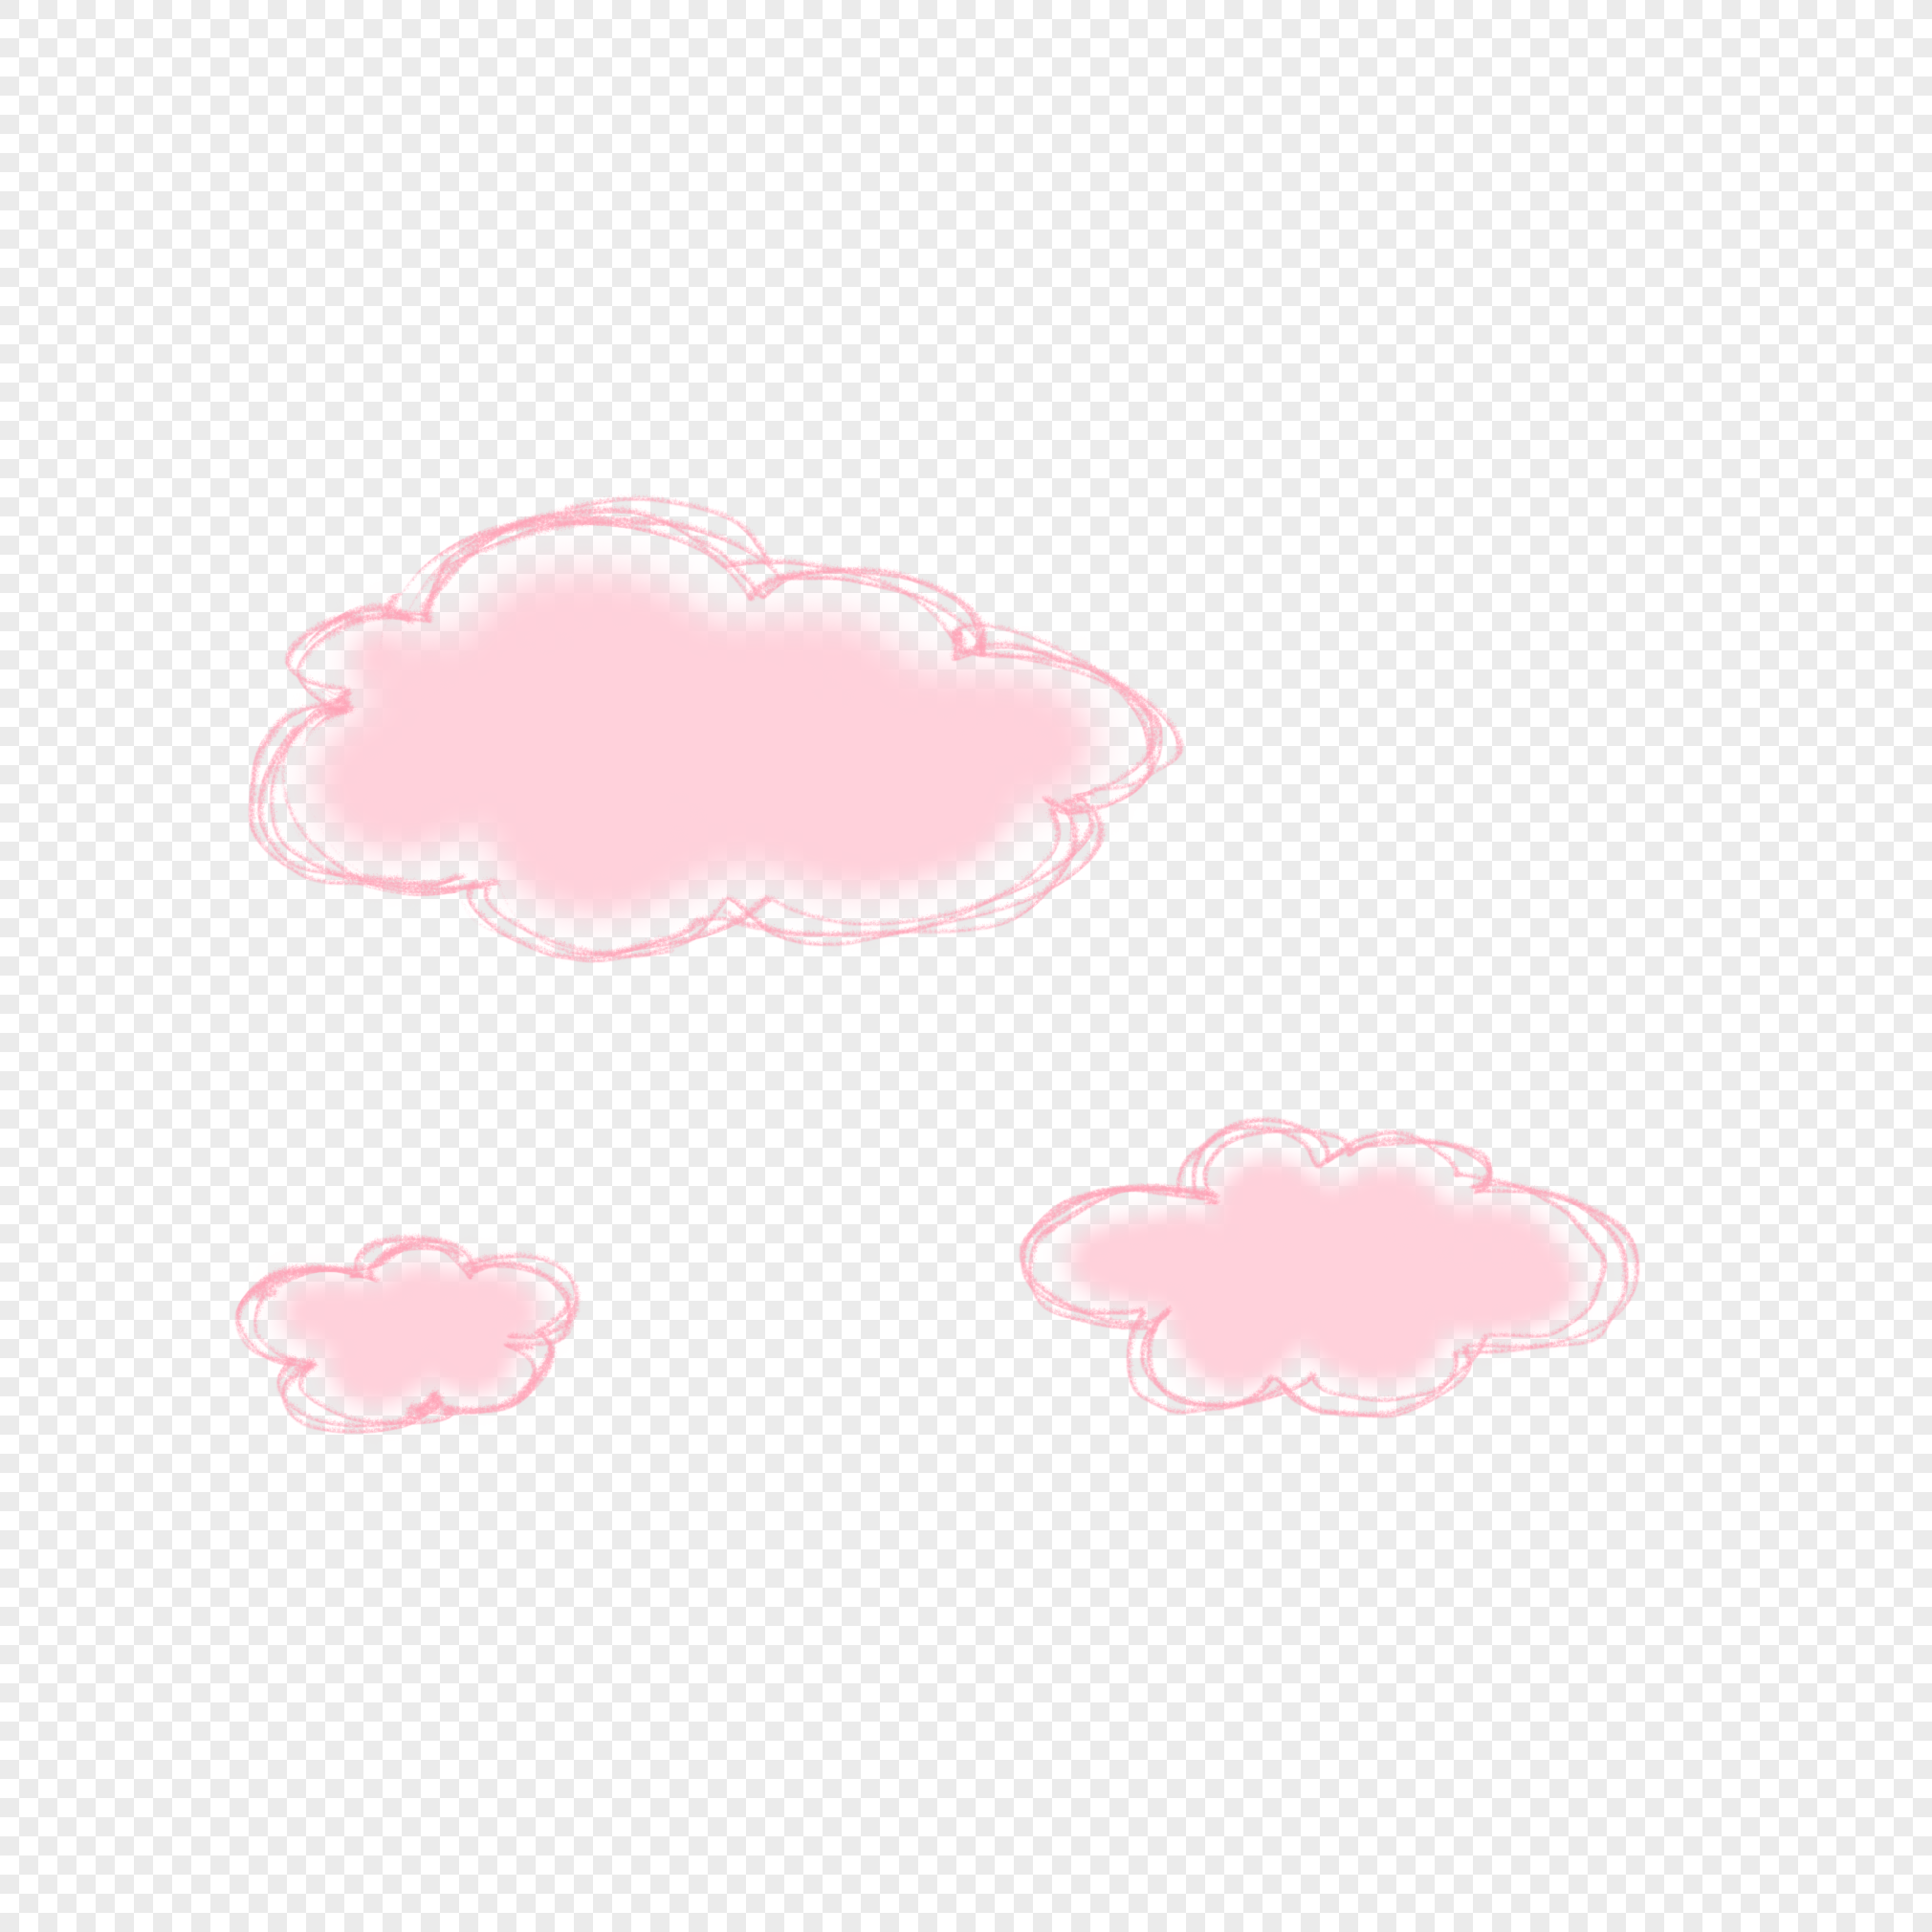 Cotton Cloud PNG Transparent Images Free Download